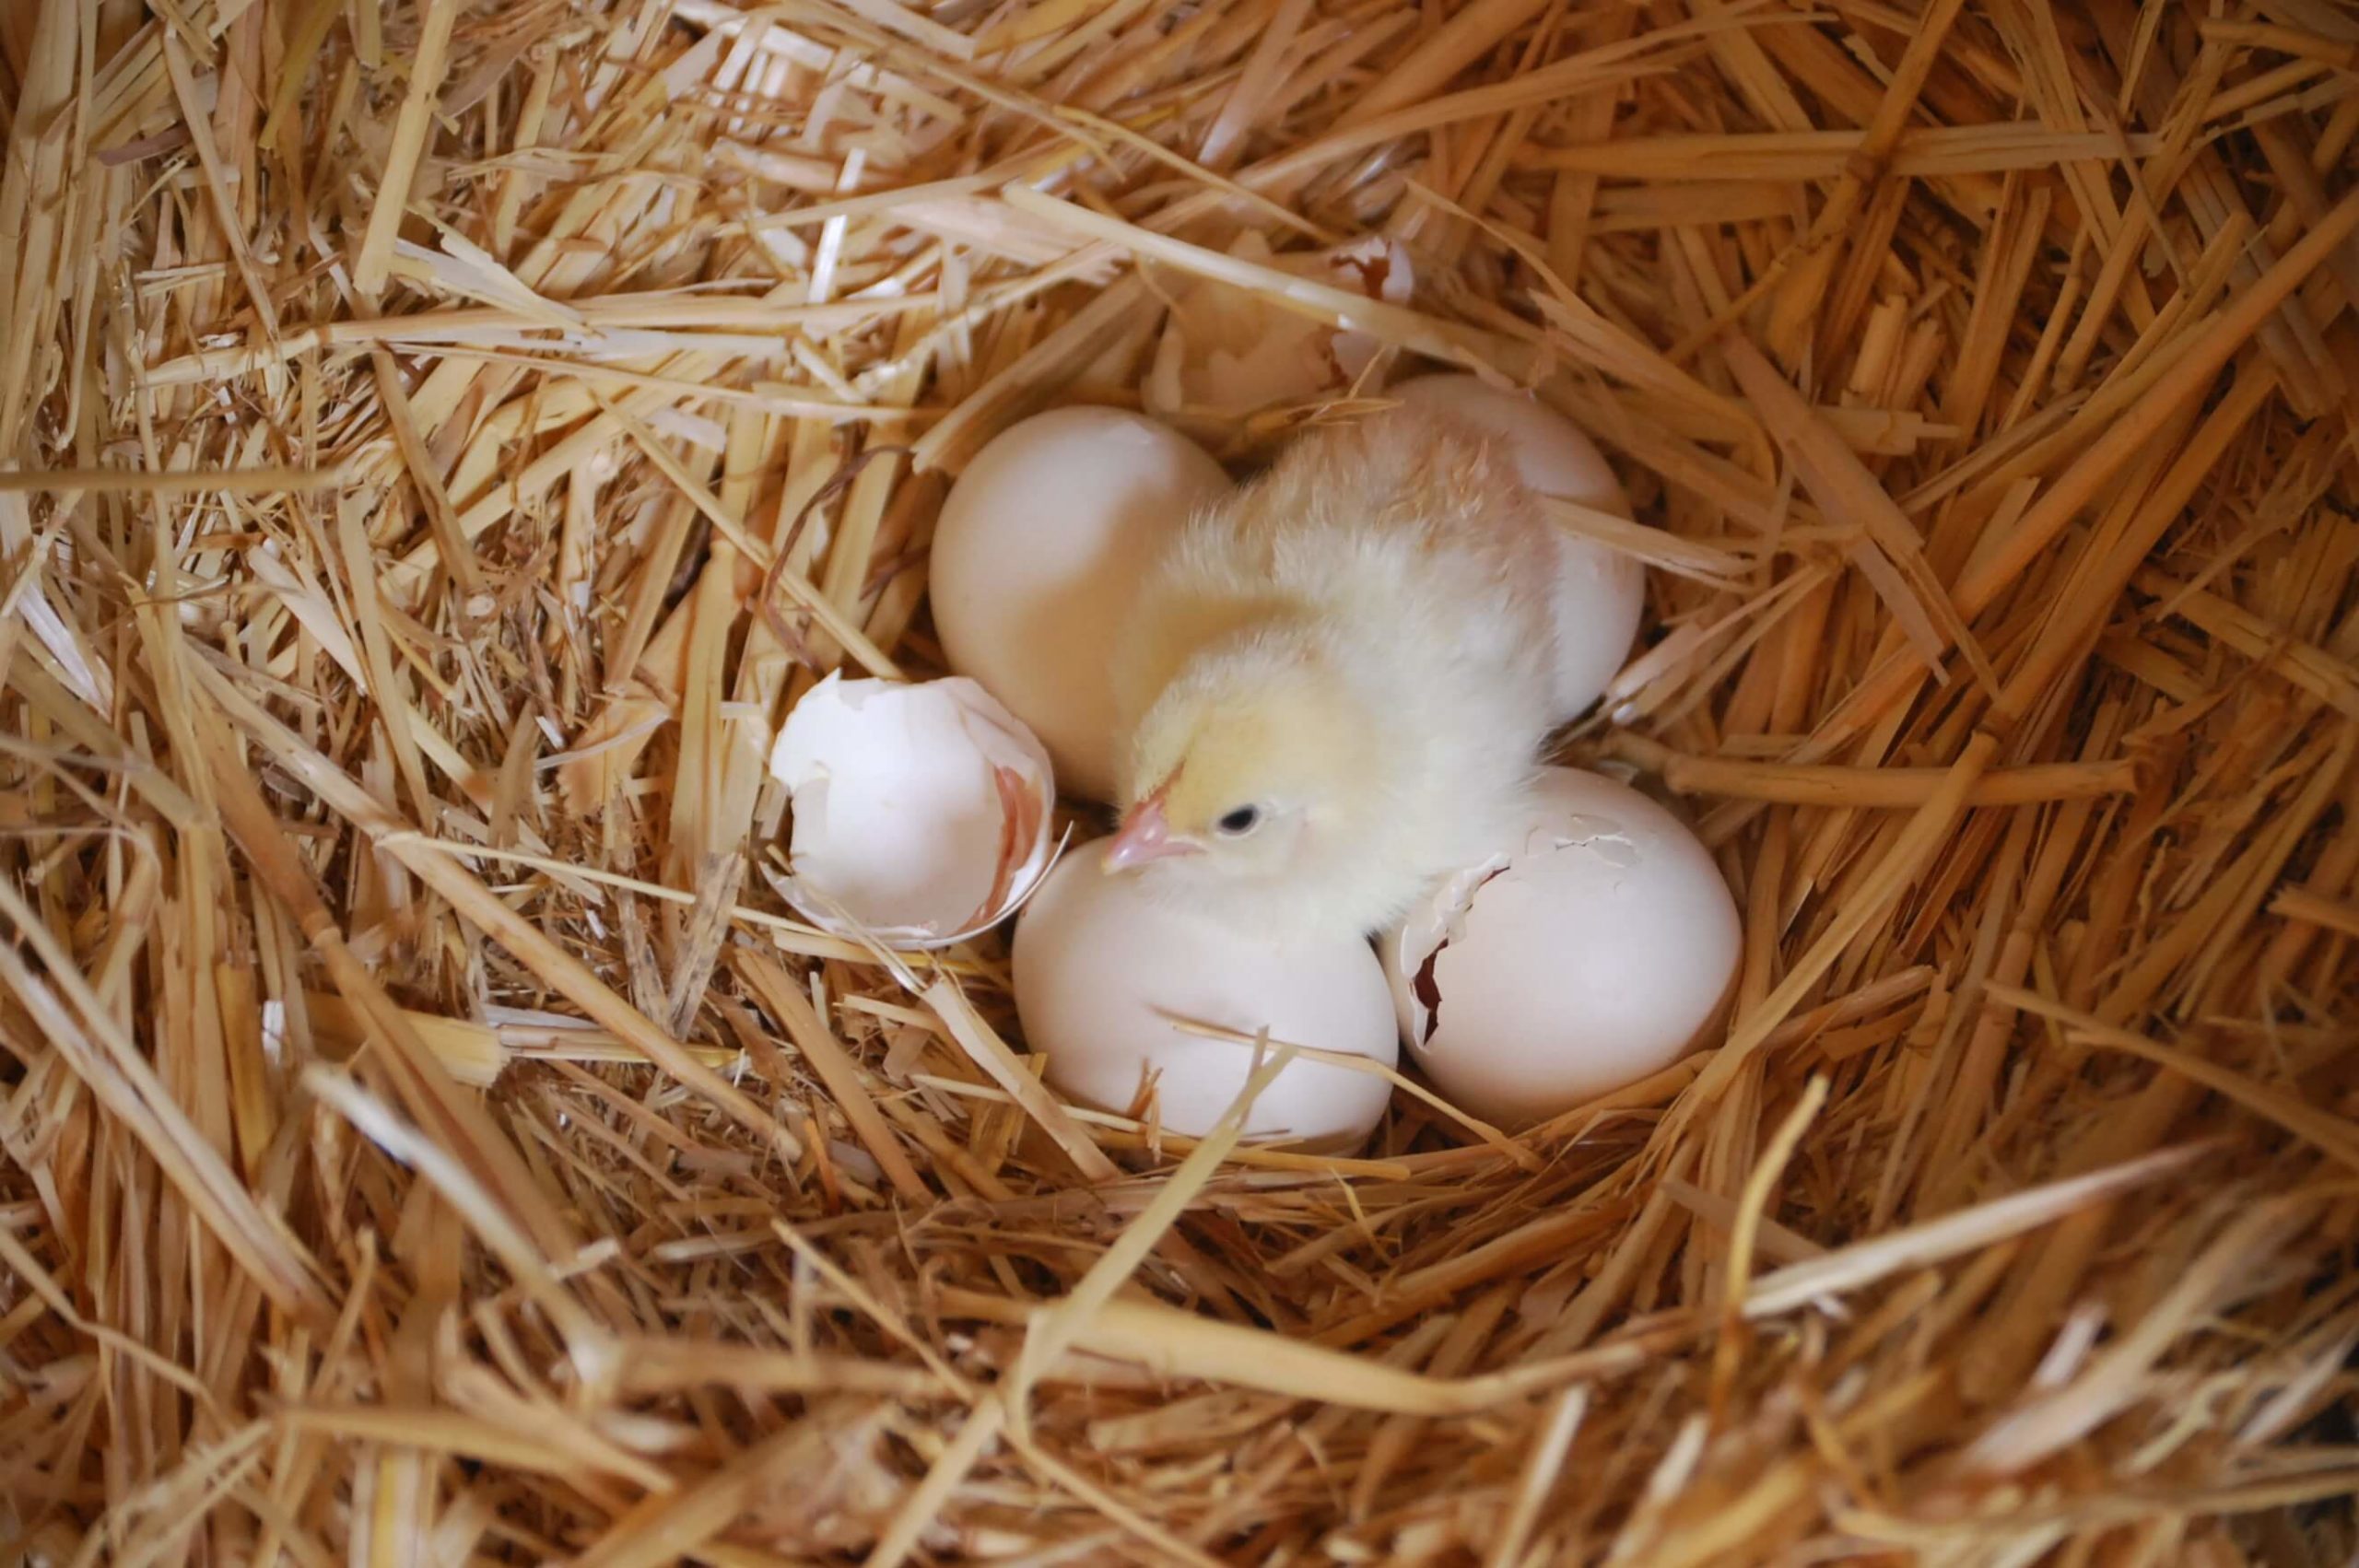 Pollitos saliendo del huevo